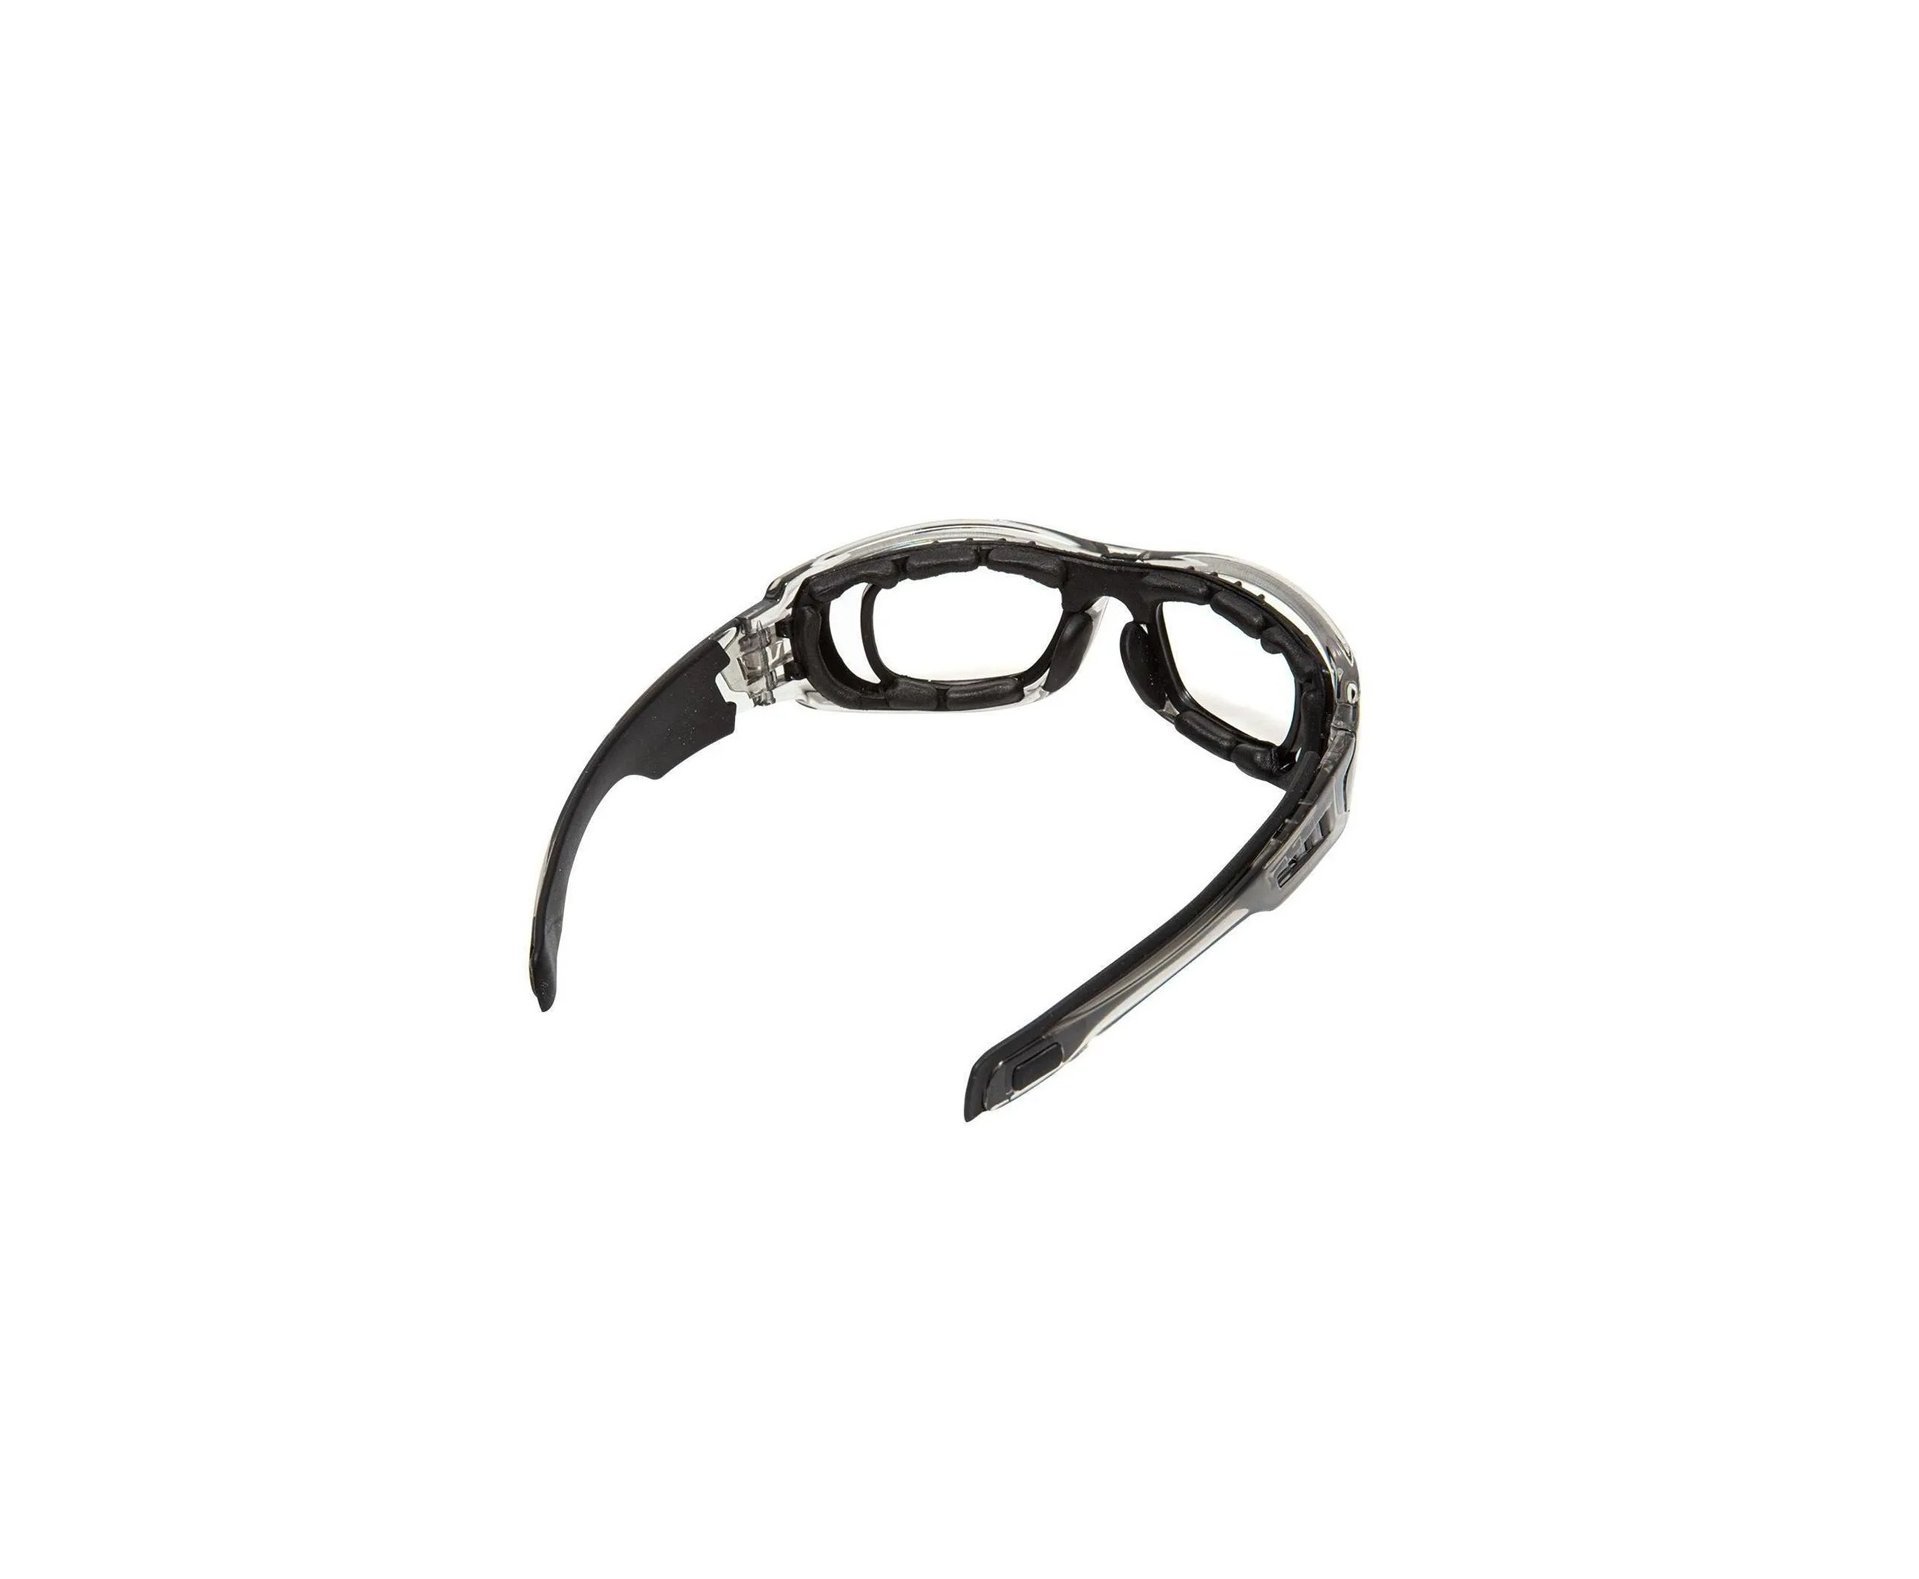 Oculos de Proteção Tatico Sierra Cinza - EVO Tactical